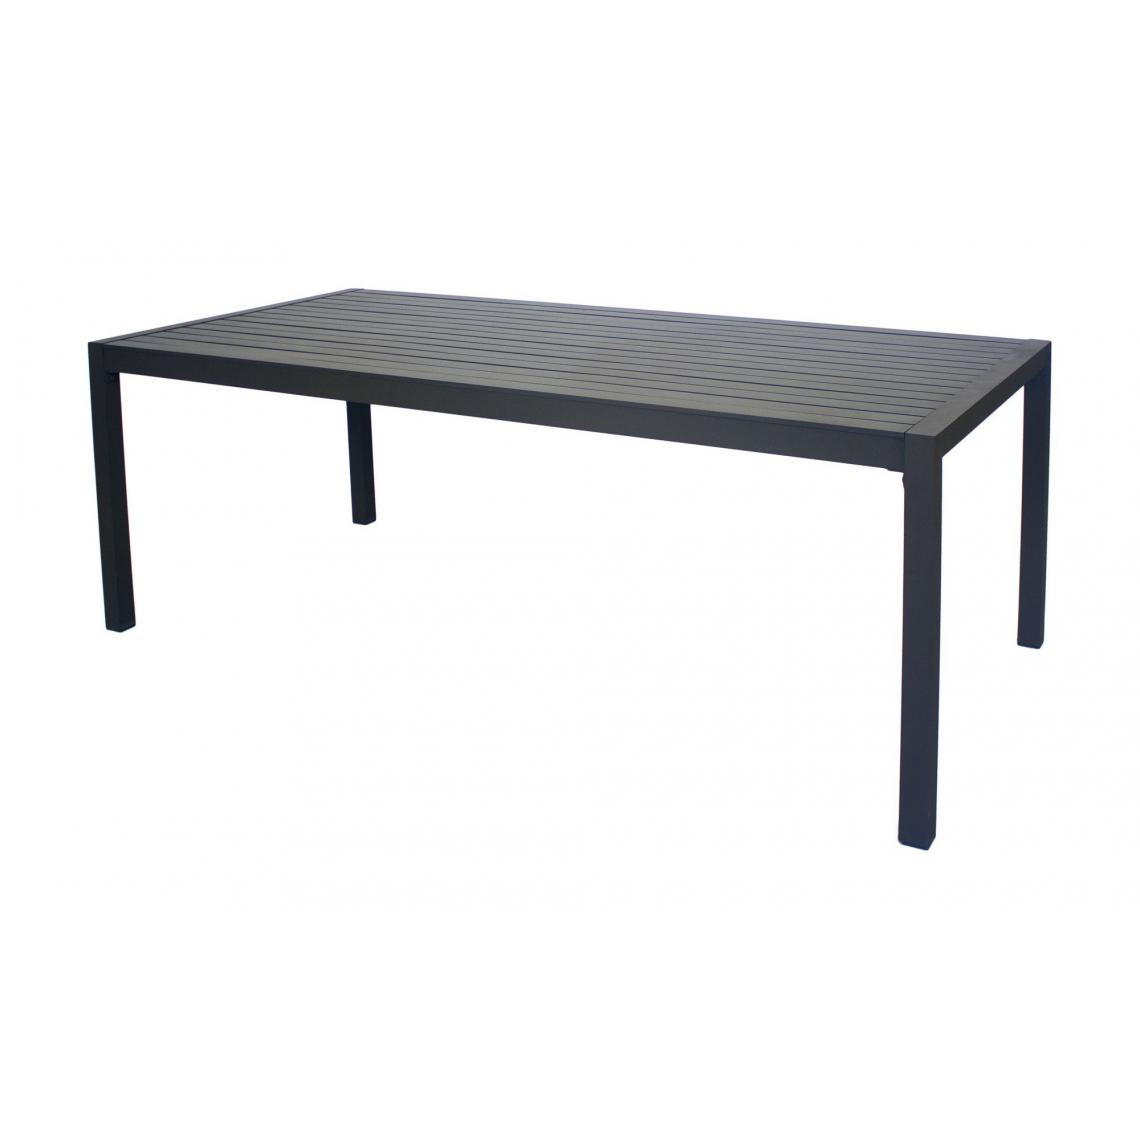 Hevea - Table de jardin en aluminium Sarana 190 cm - Tables de jardin